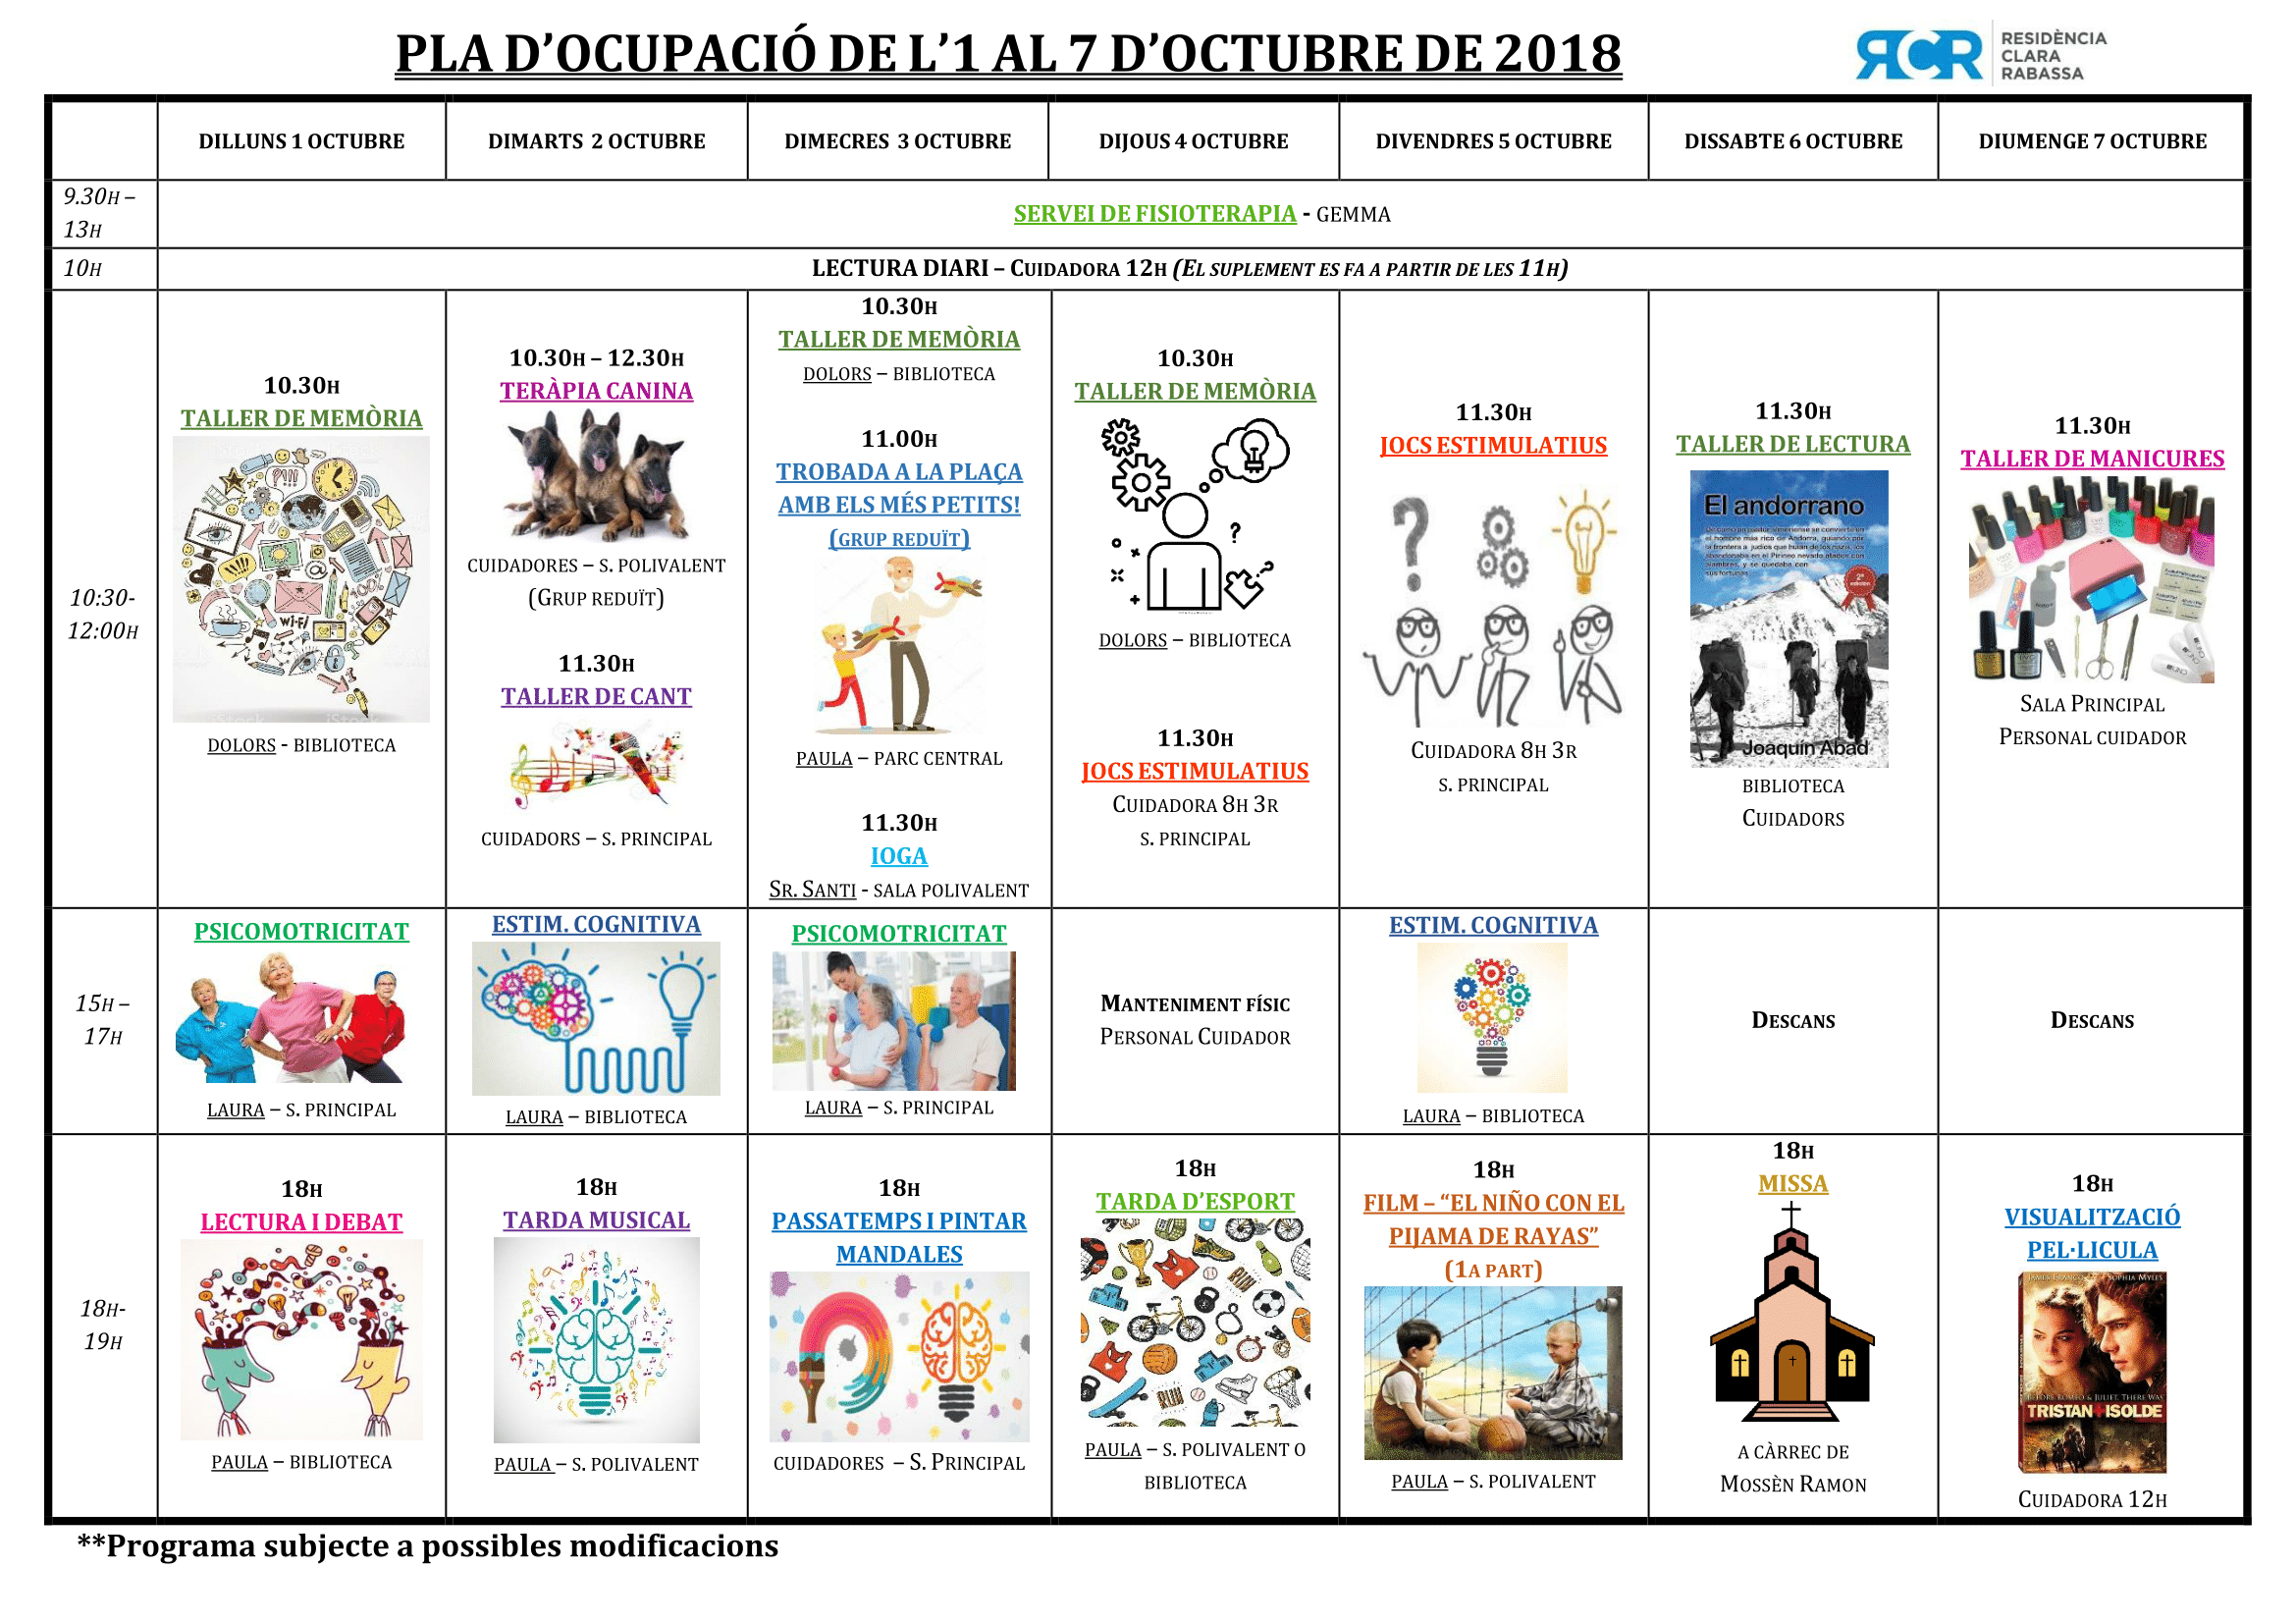 PLA OCUPACIÓ DE L’1 AL 7 D’OCTUBRE DE 2018